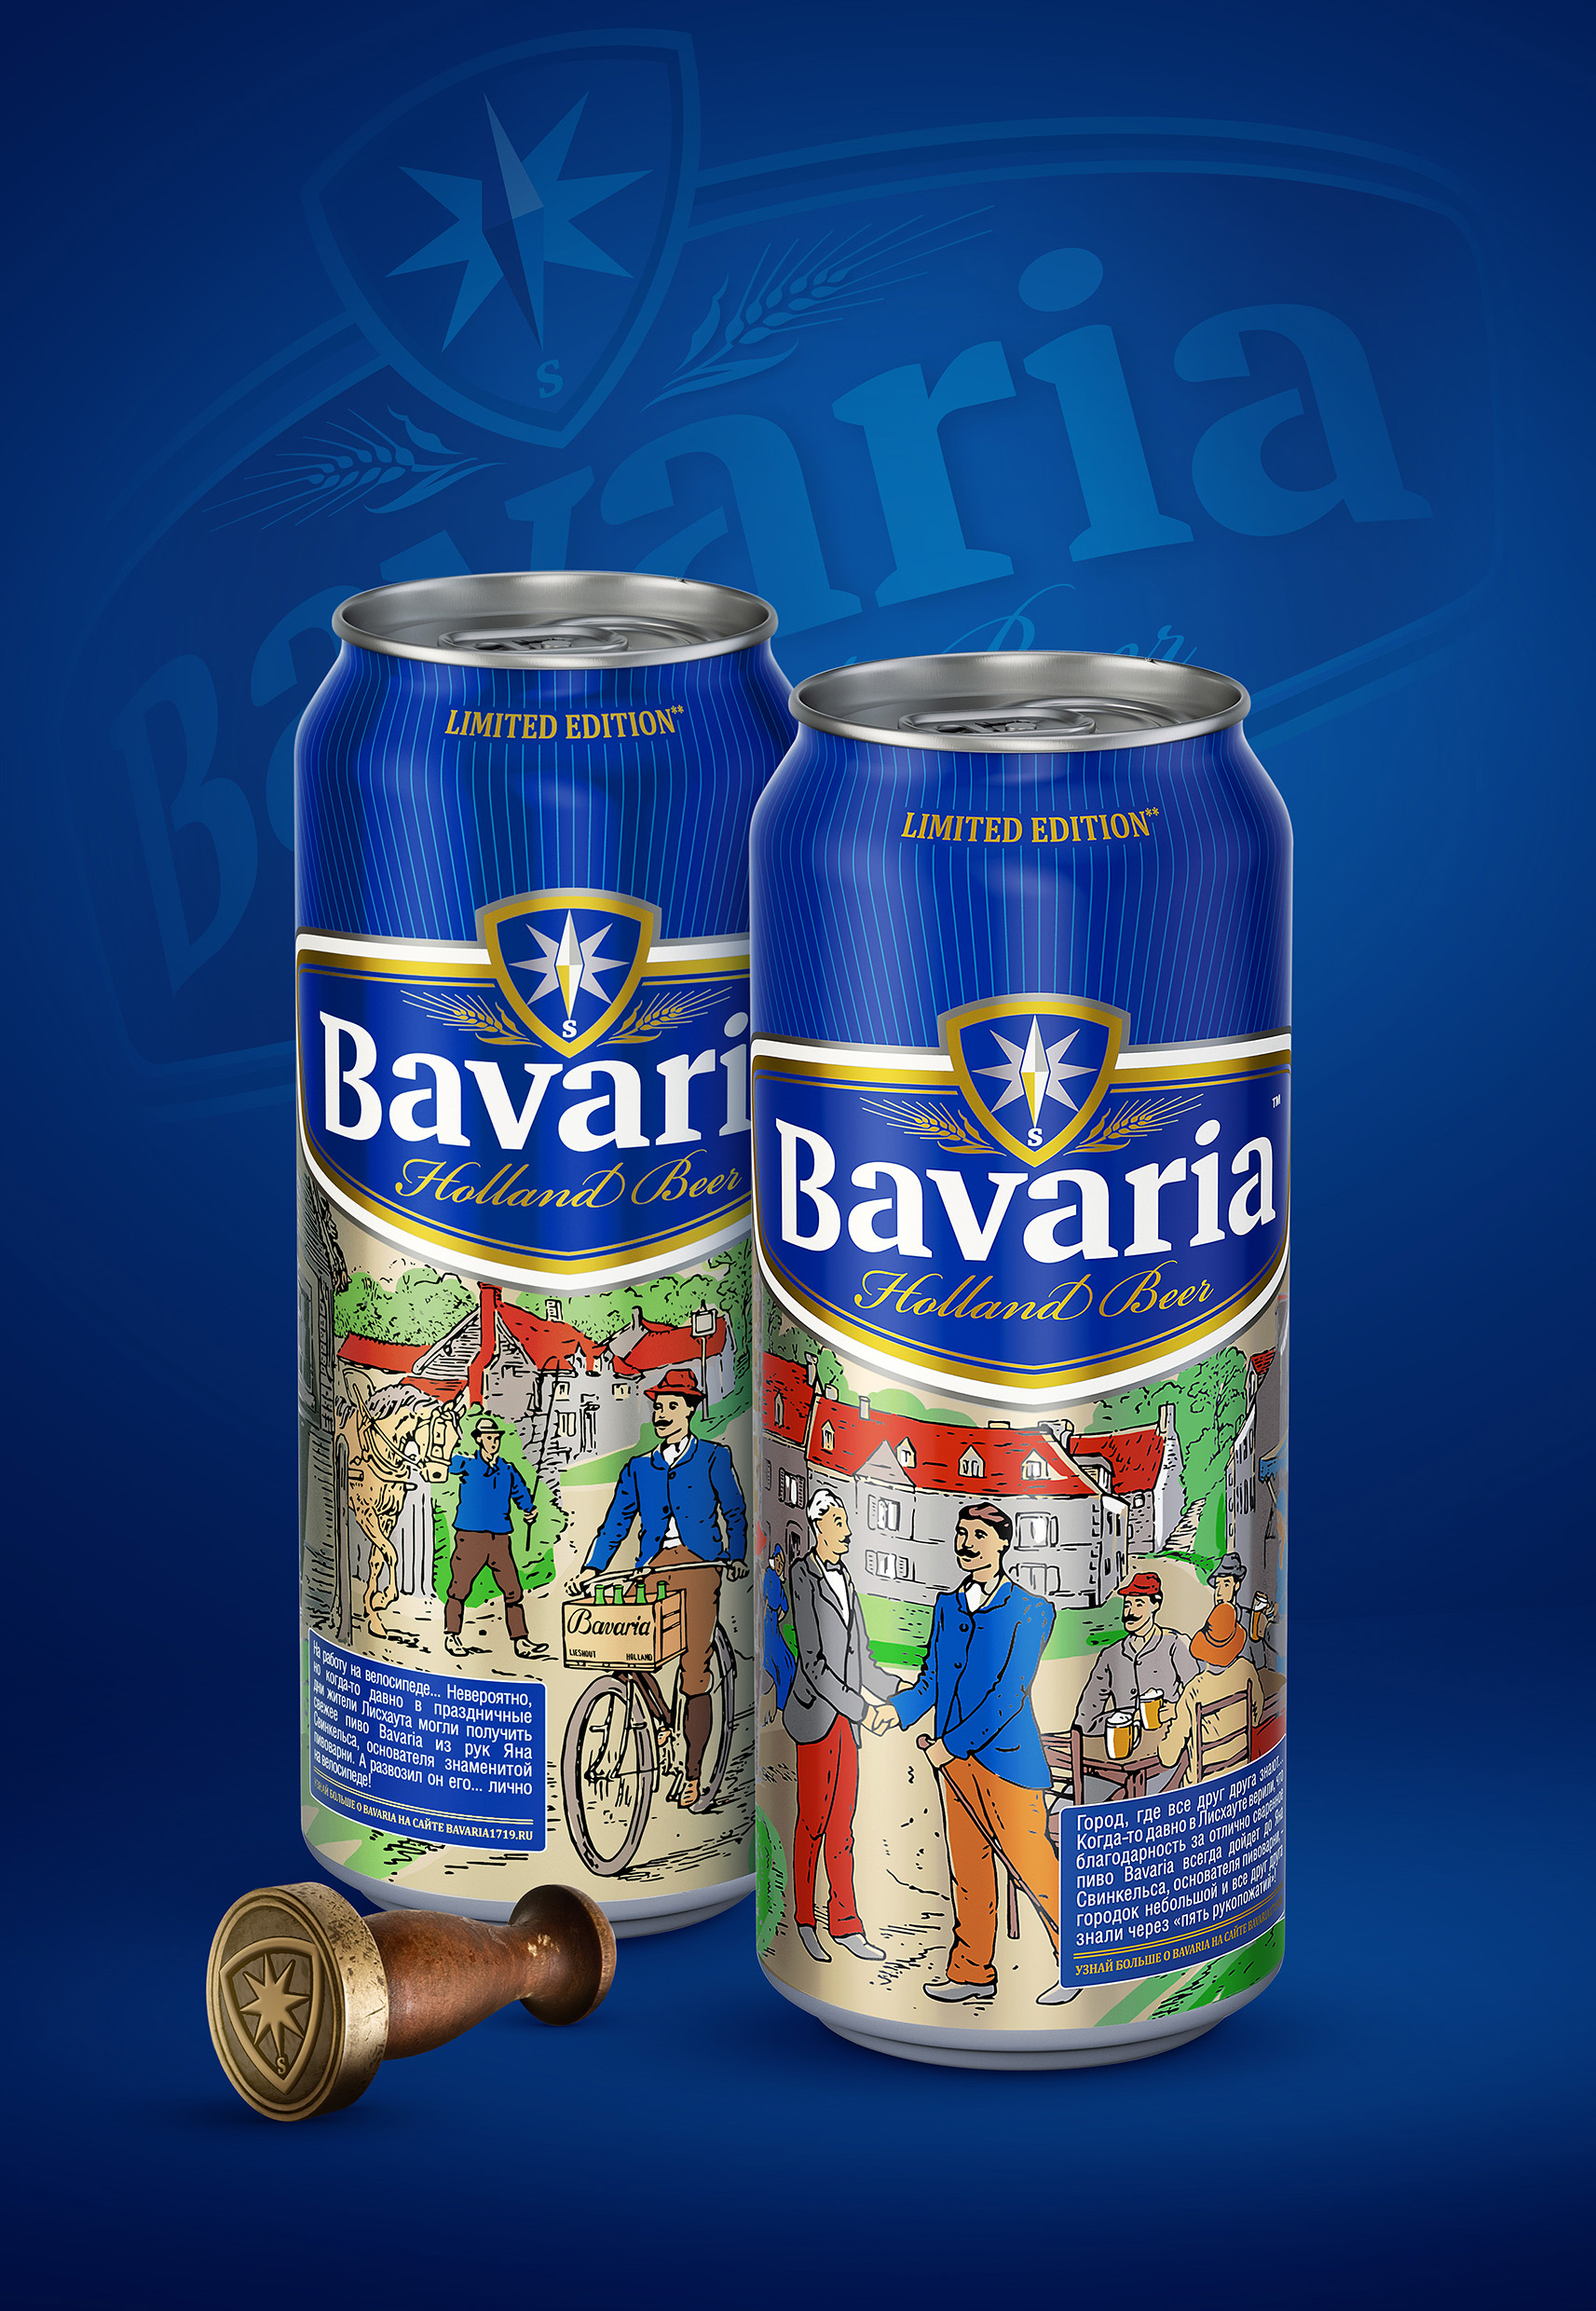 Россия. Дизайнеры брендингового агентства Viewpoint разработали упаковку Bavaria Limited Edition